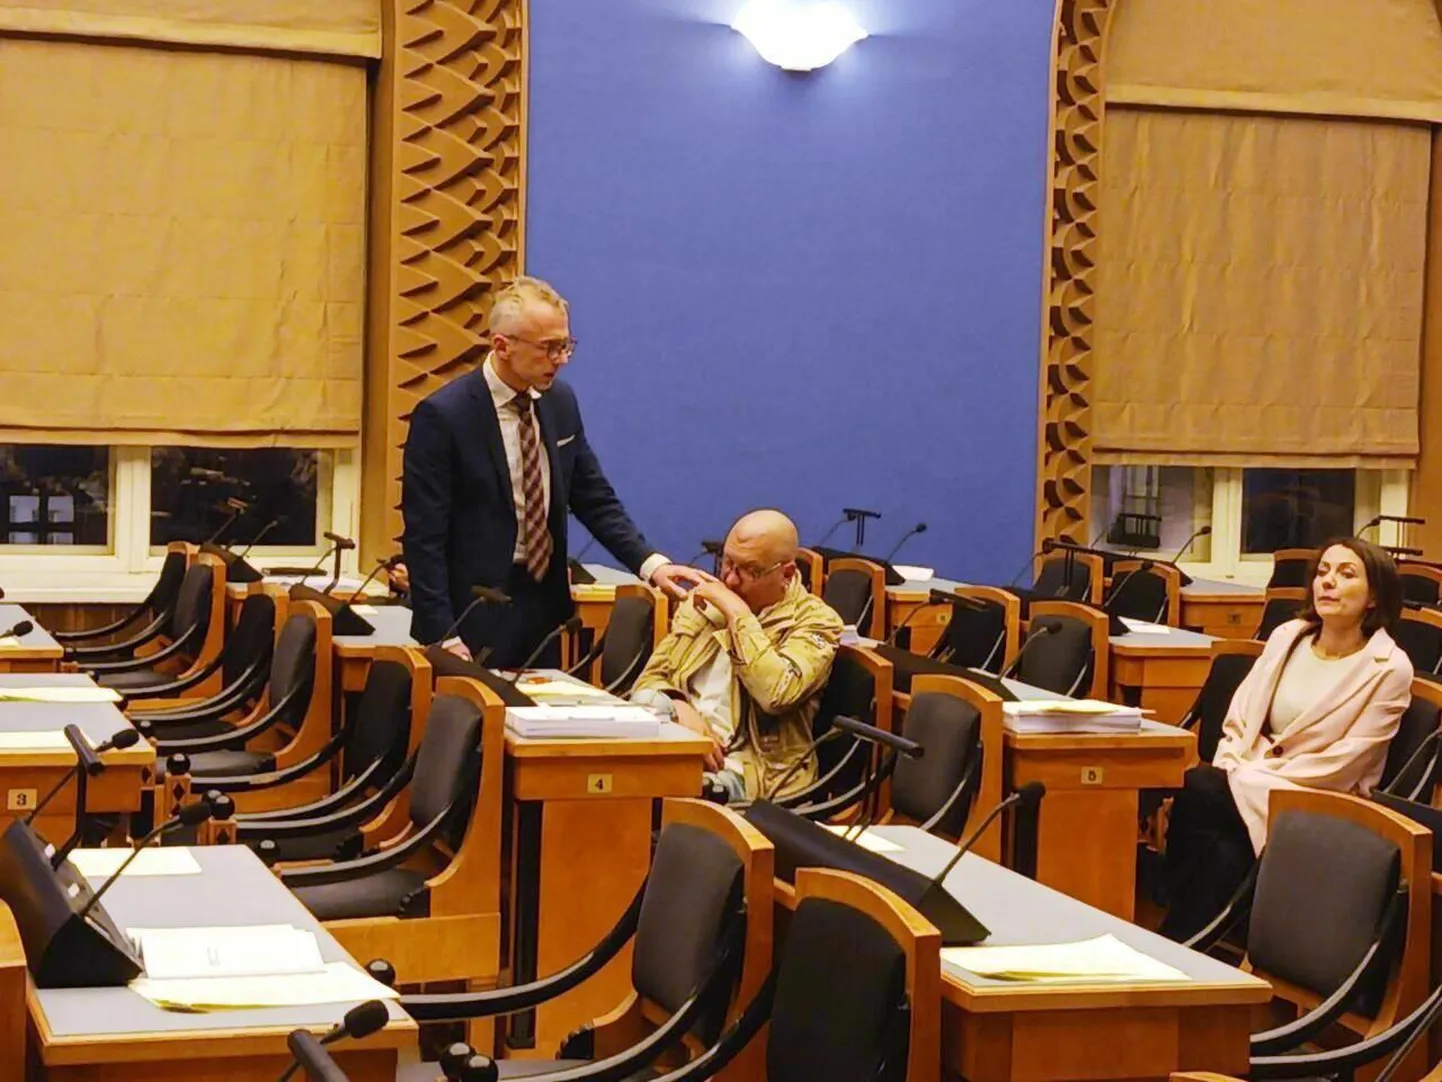 Оппозиционные депутаты сфотографировали спящего Юку-Калле Райда и получили за это выговор от председателя сессии.